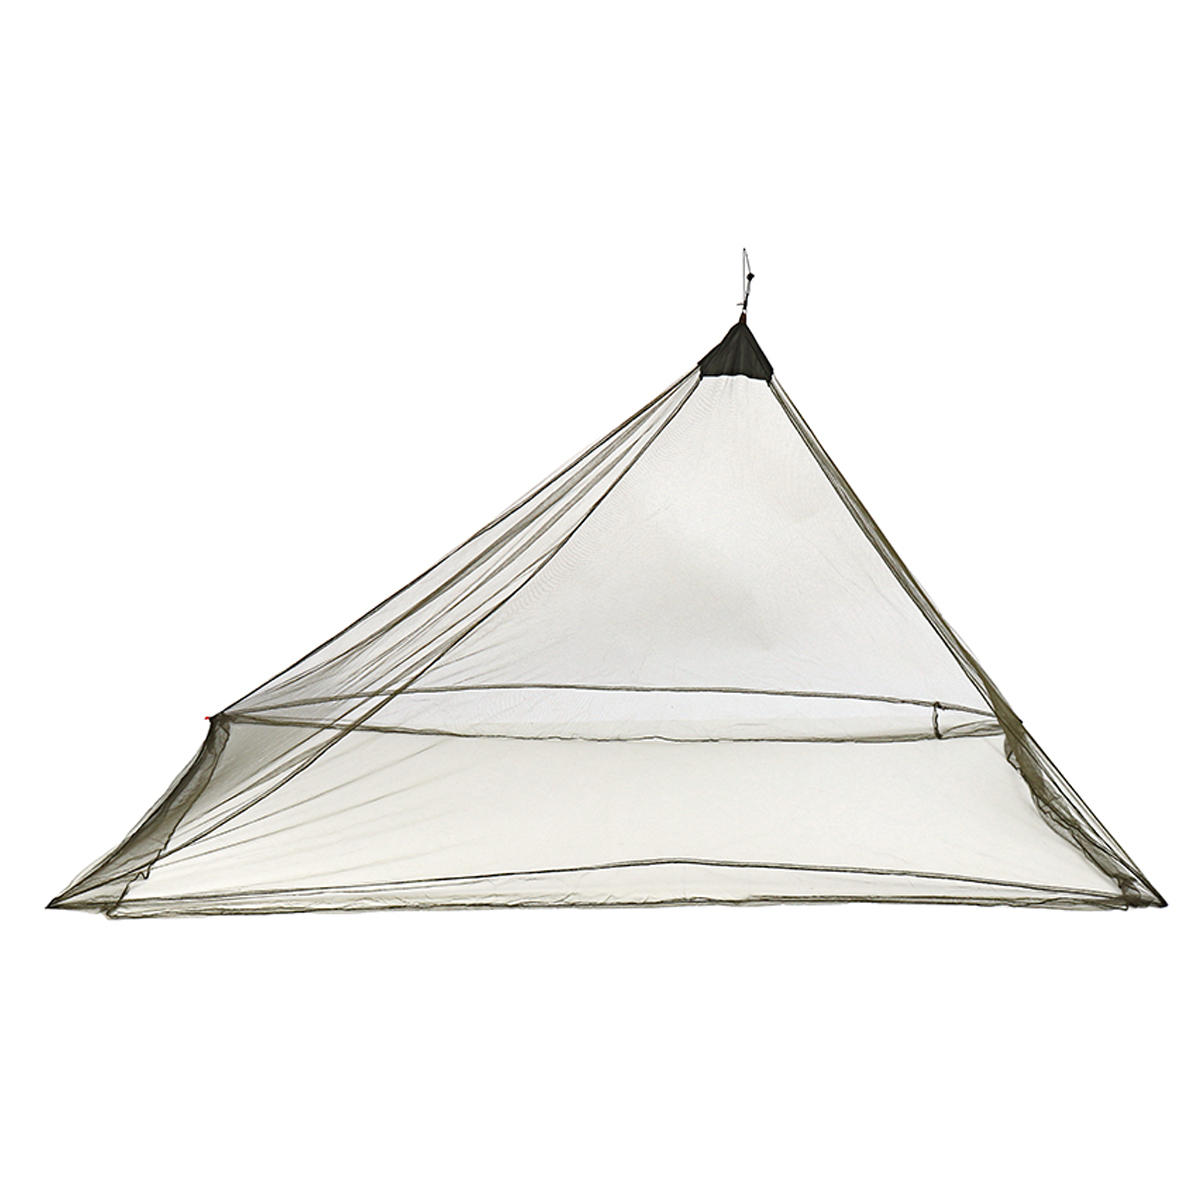 Rede mosquiteira de camping leve e portátil, tenda anti-mosquito ao ar livre, cobertura anti-mosquito.